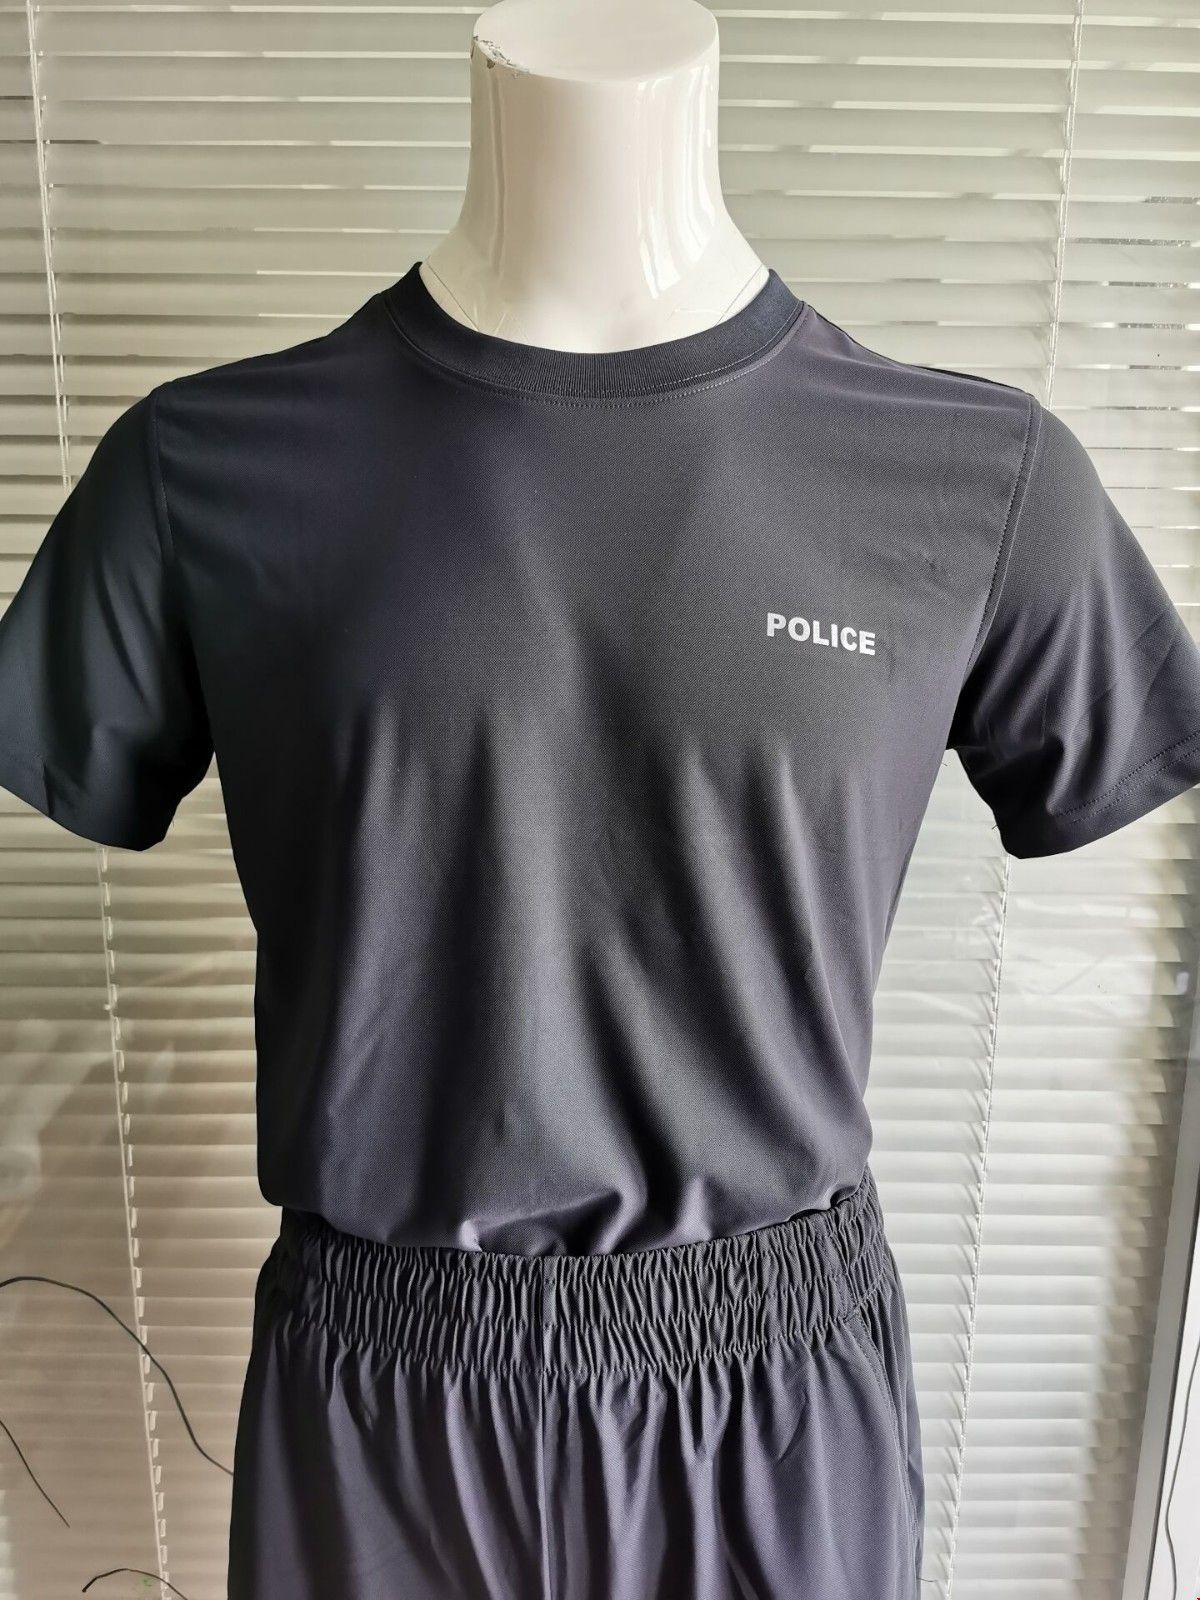 警察体能训练服 警察夏季训练服短袖 短裤套装